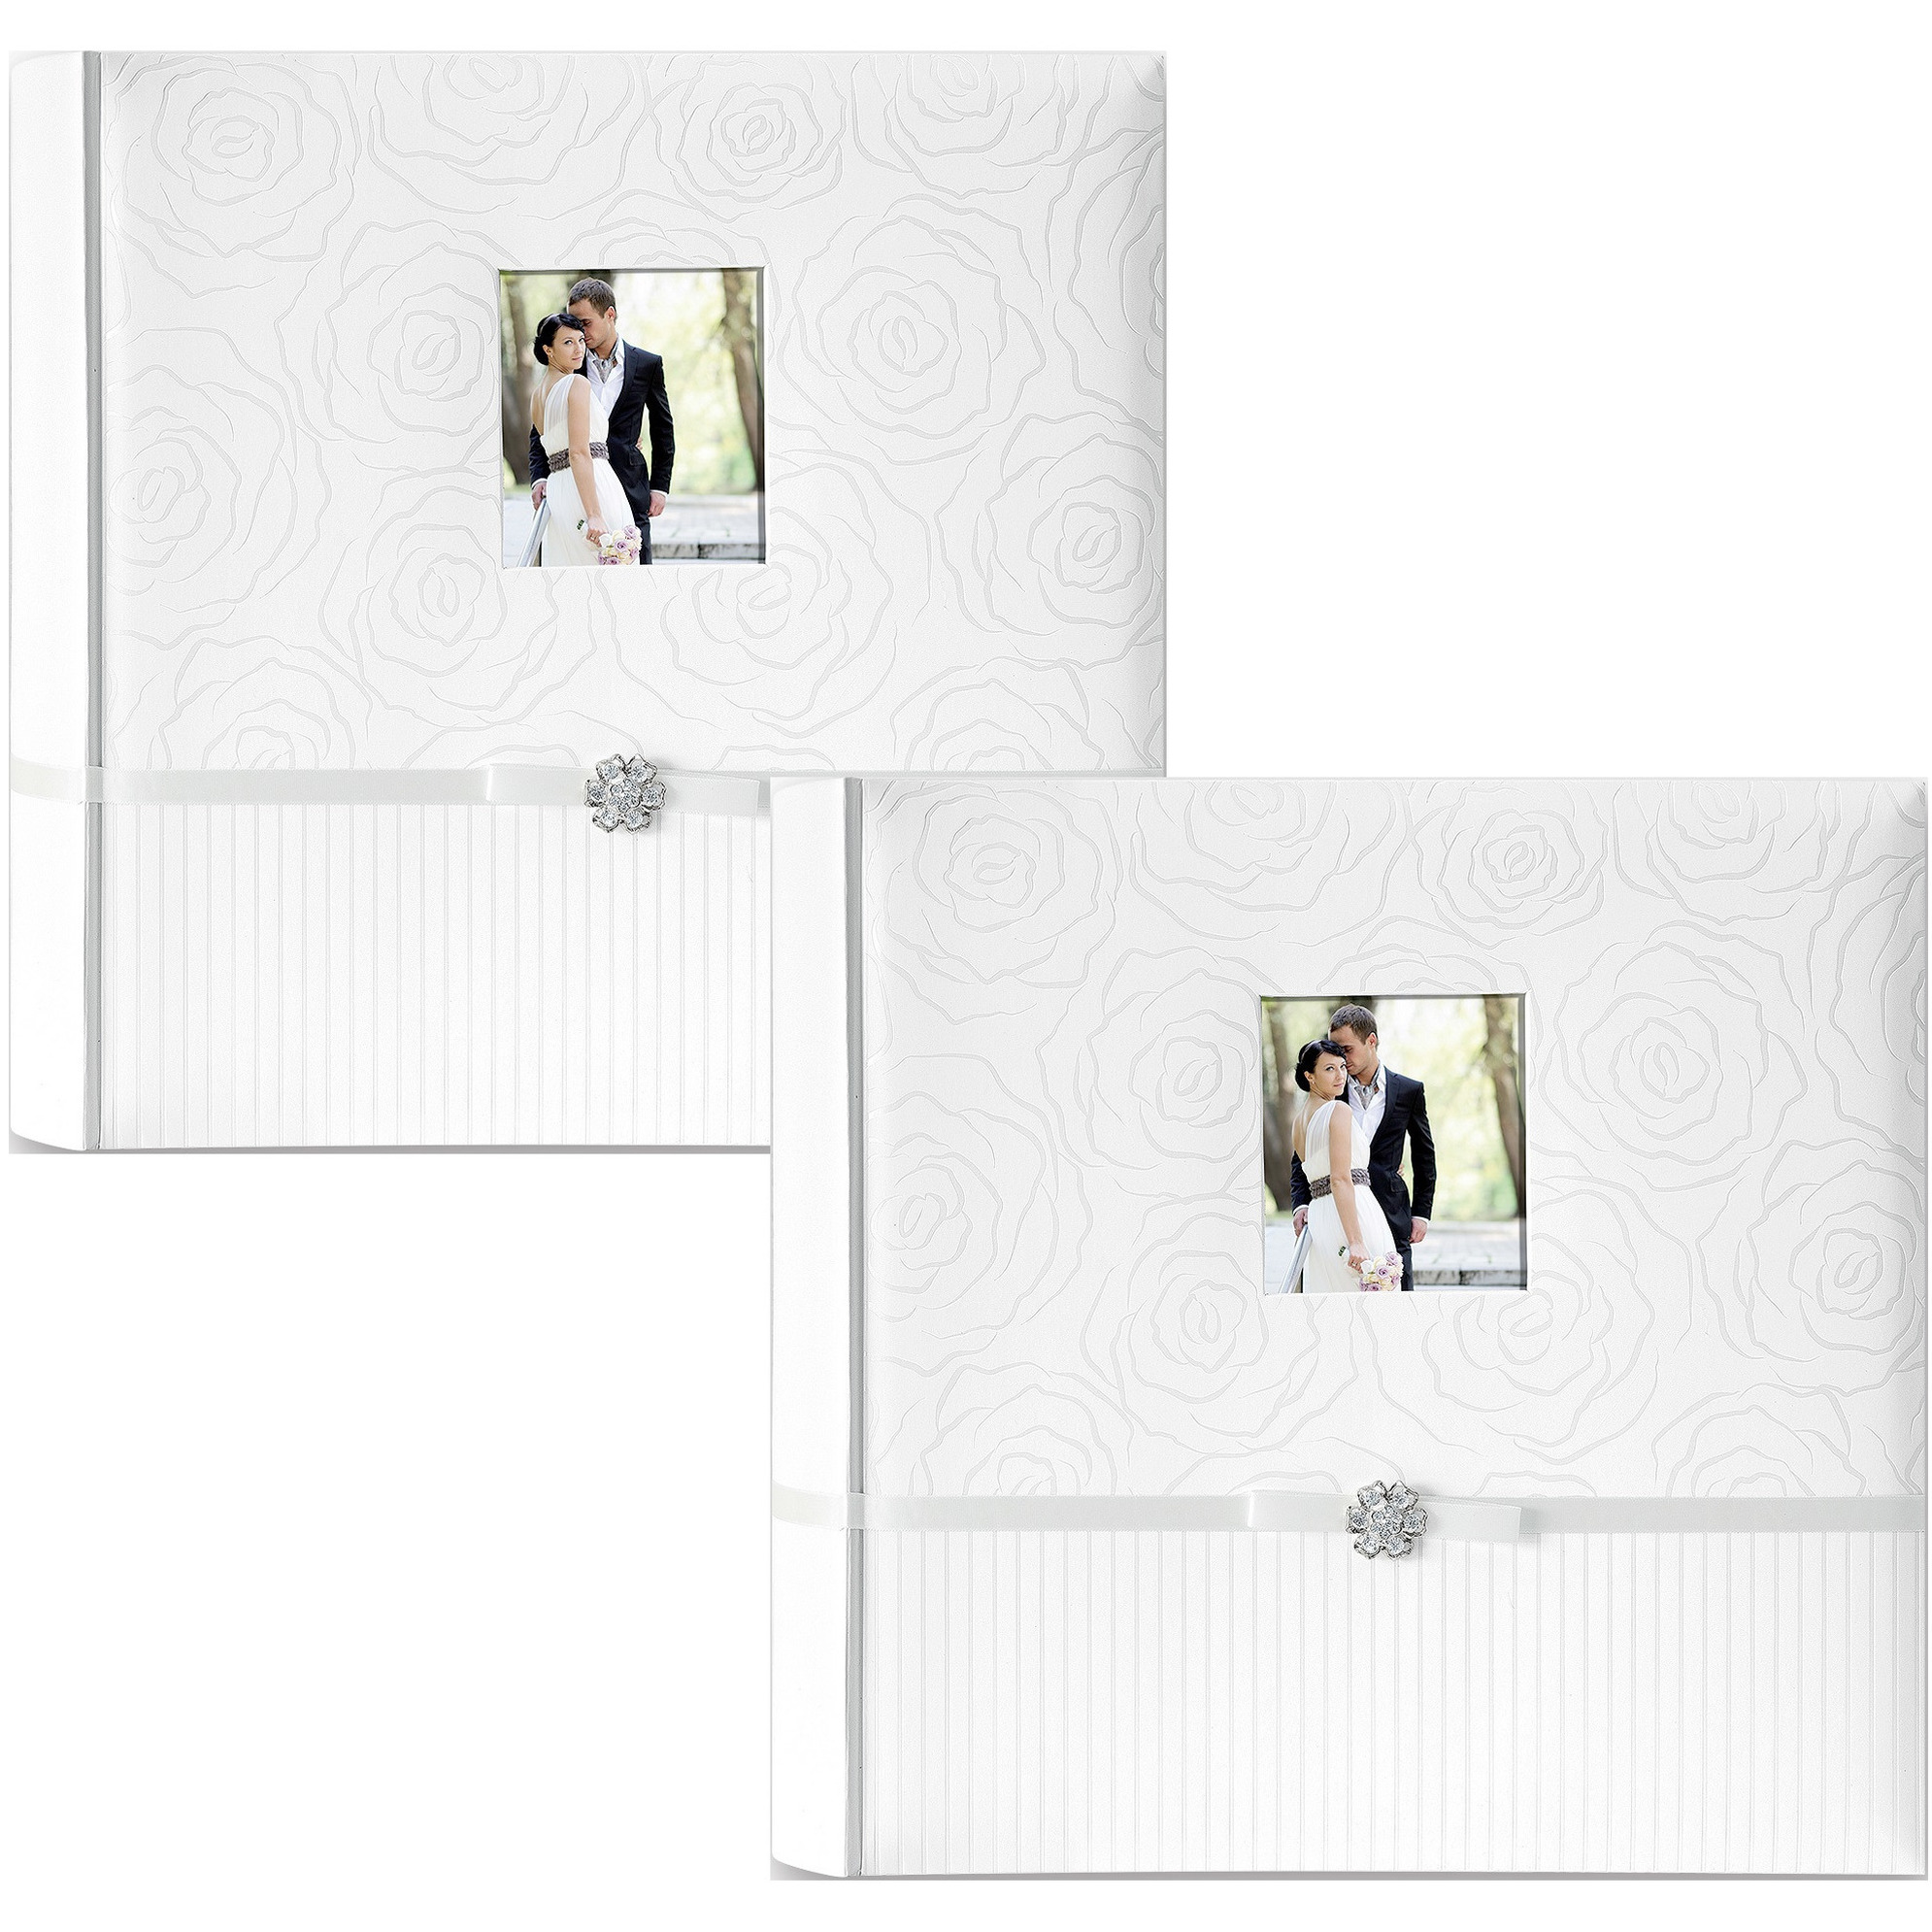 2x Luxe fotoboek-fotoalbum Annabella bruiloft-huwelijk met 50 paginas wit 32 x 32 x 6 cm